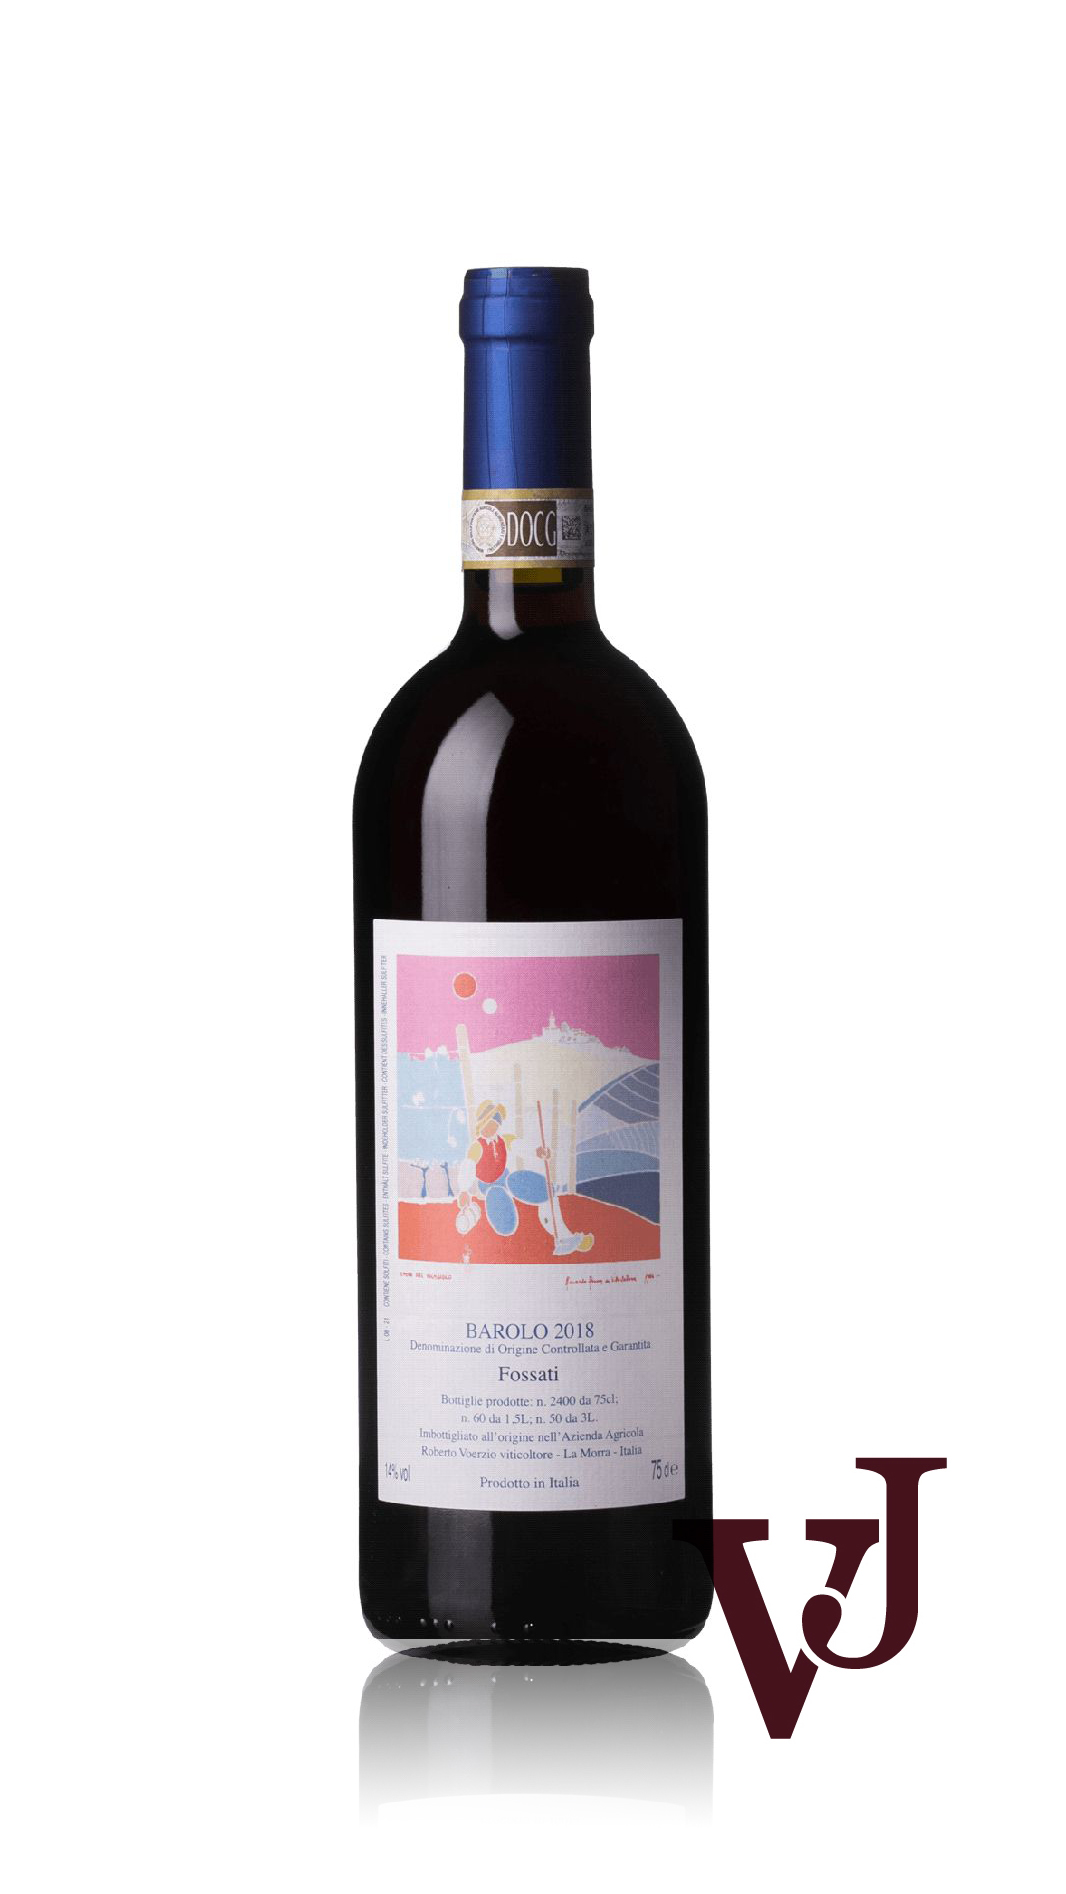 Rött Vin - Barolo artikel nummer 9462401 från producenten Azienda Agricola Roberto Voerzio från området Italien